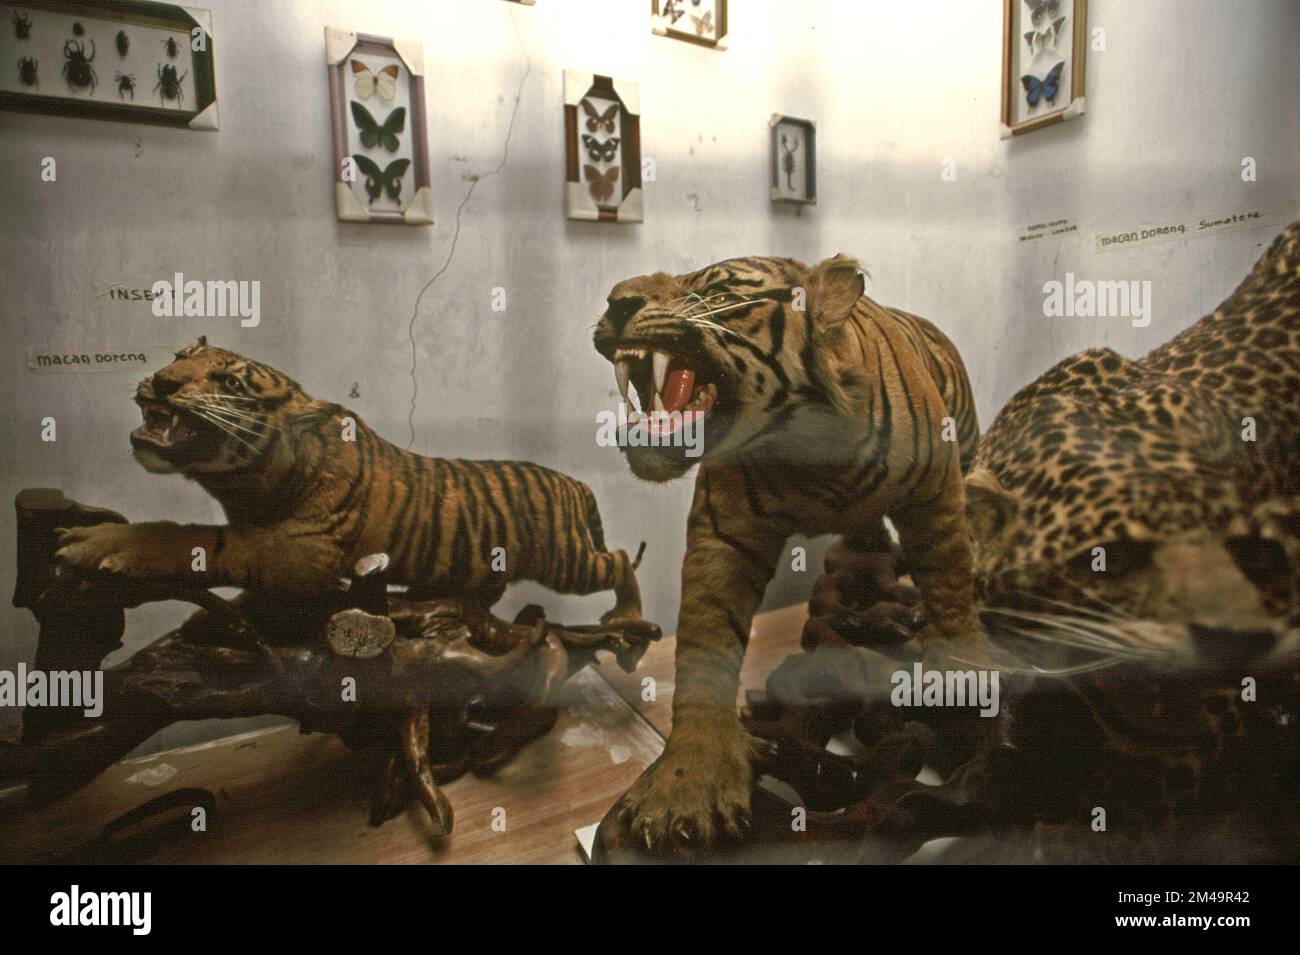 Gli esemplari di tigre che sono esposti in una stanza di una casa fungono da mini museo per bambini a Gegerkalong, Bandung, Giava Occidentale, Indonesia. La maggior parte degli esemplari sono stati raccolti durante il servizio militare del proprietario. Foto Stock